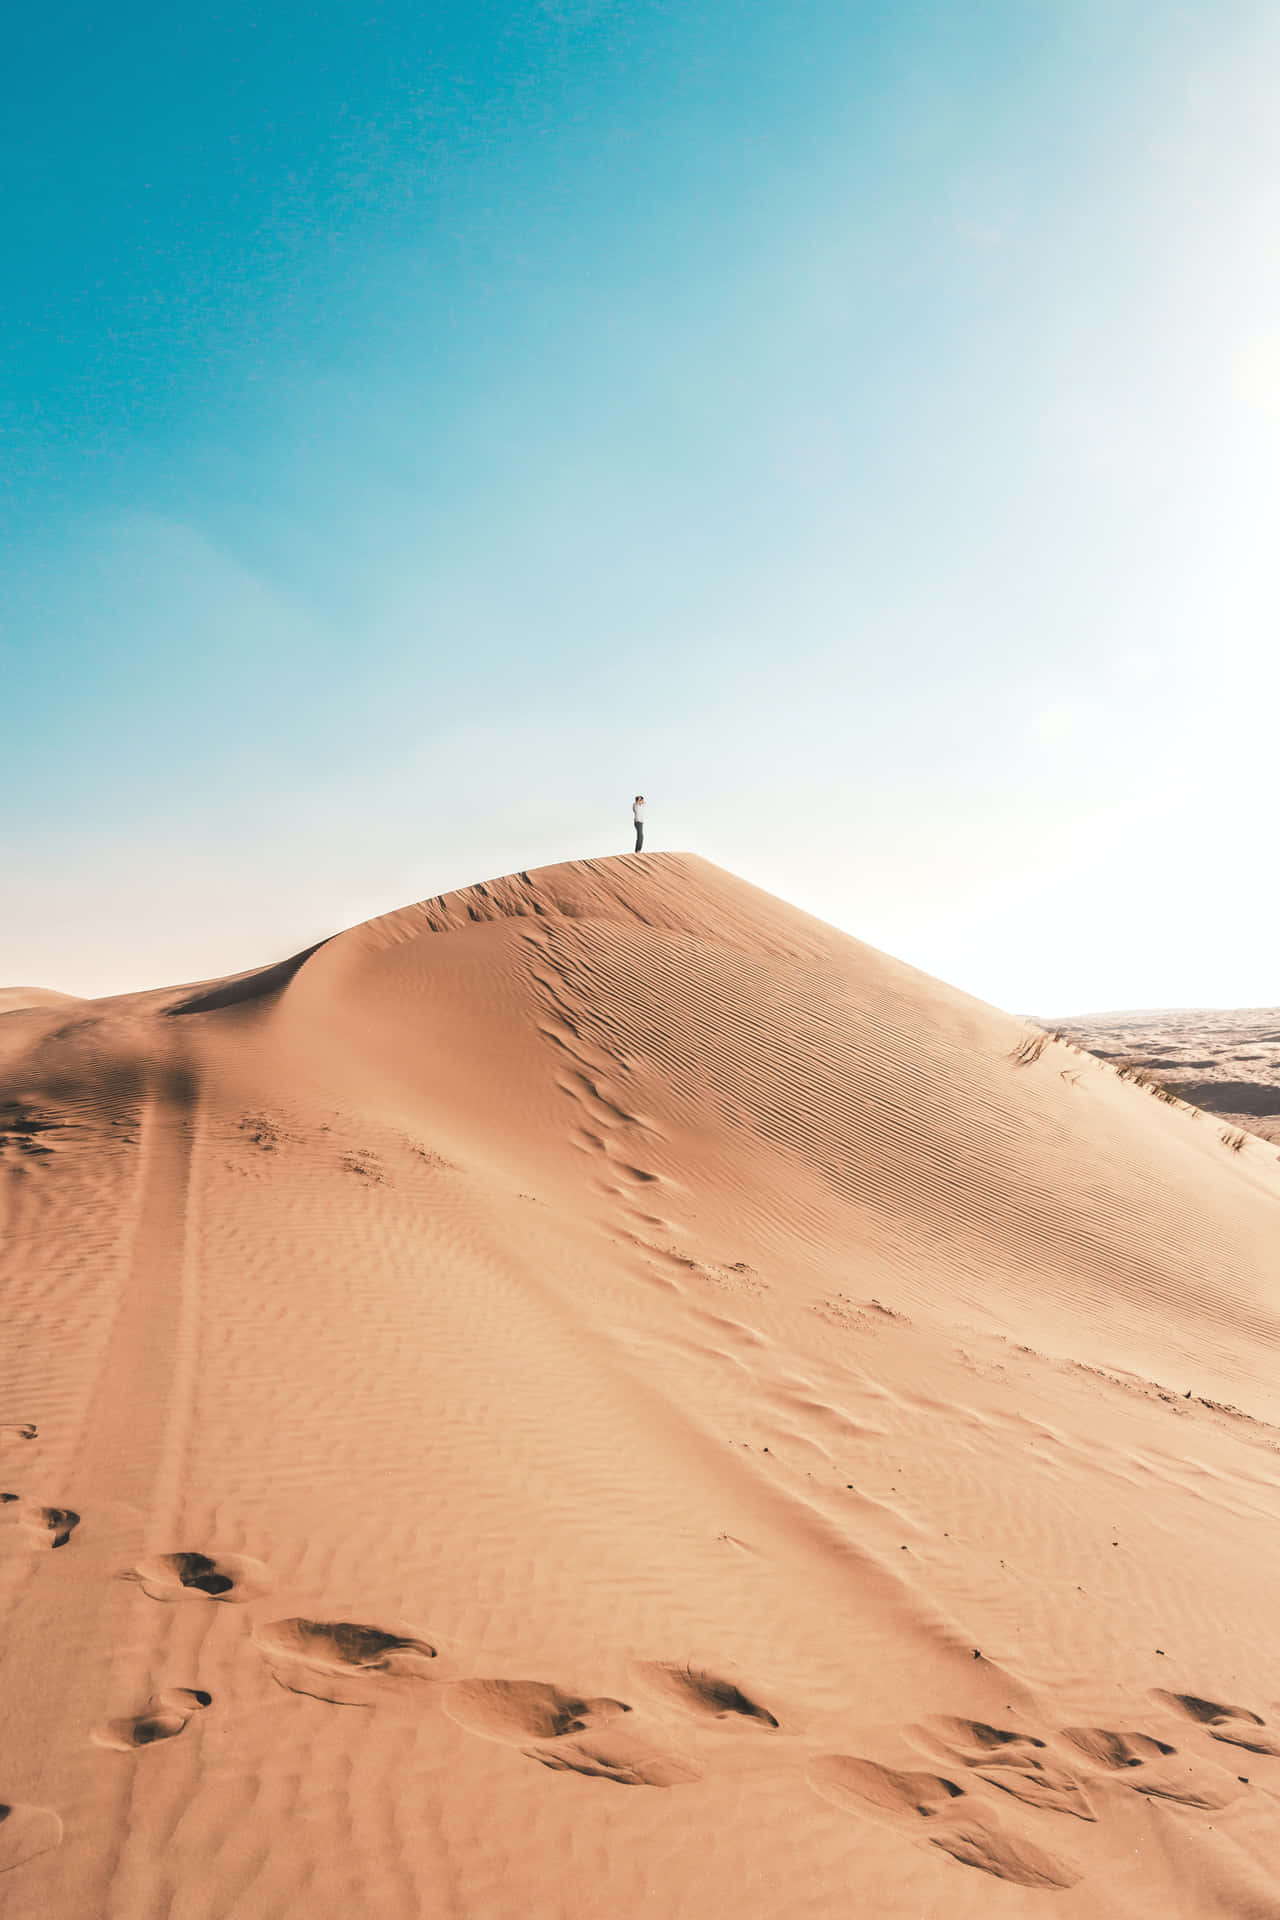 Personavarada En El Desierto. Fondo de pantalla